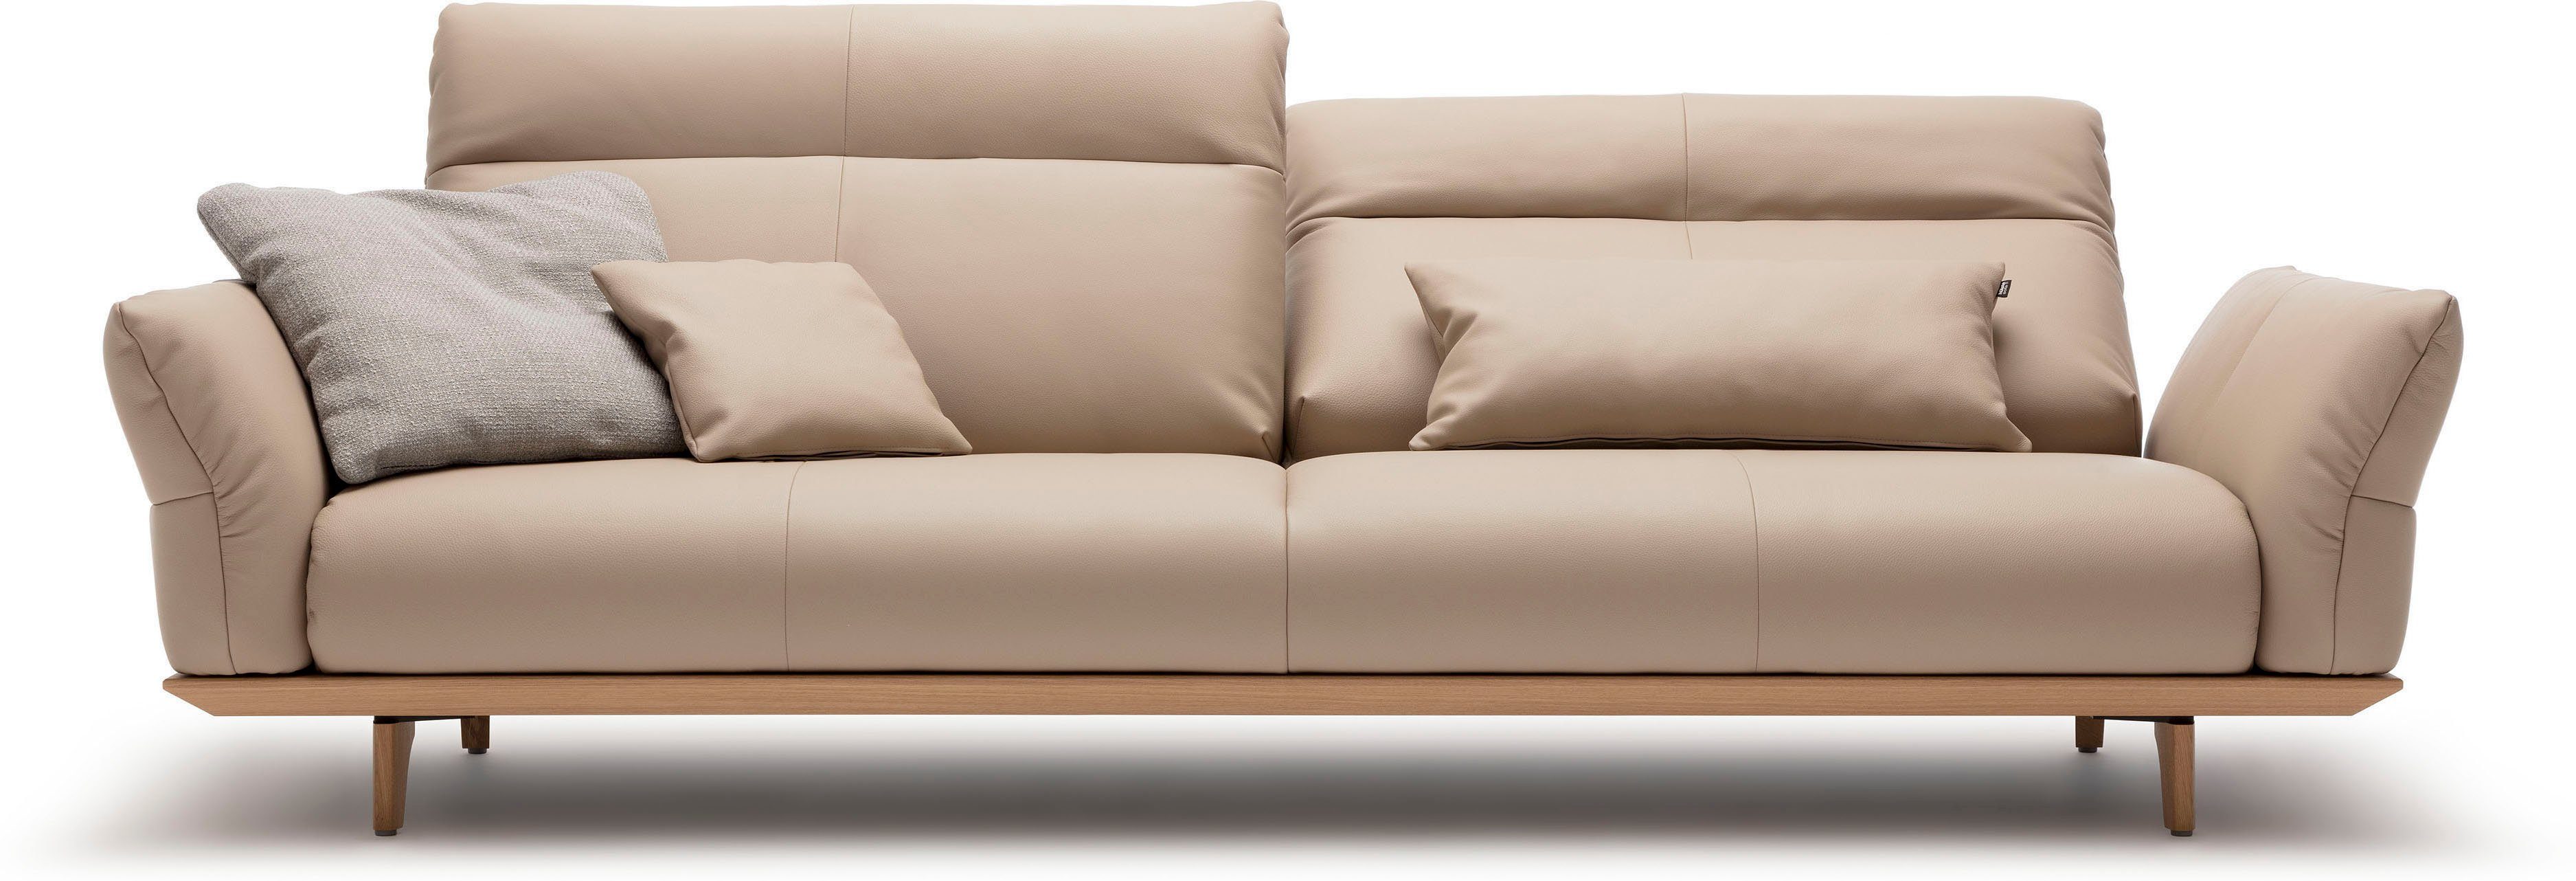 Füße Sockel Eiche sofa natur, 4-Sitzer hülsta hs.460, in 248 cm Eiche, Breite